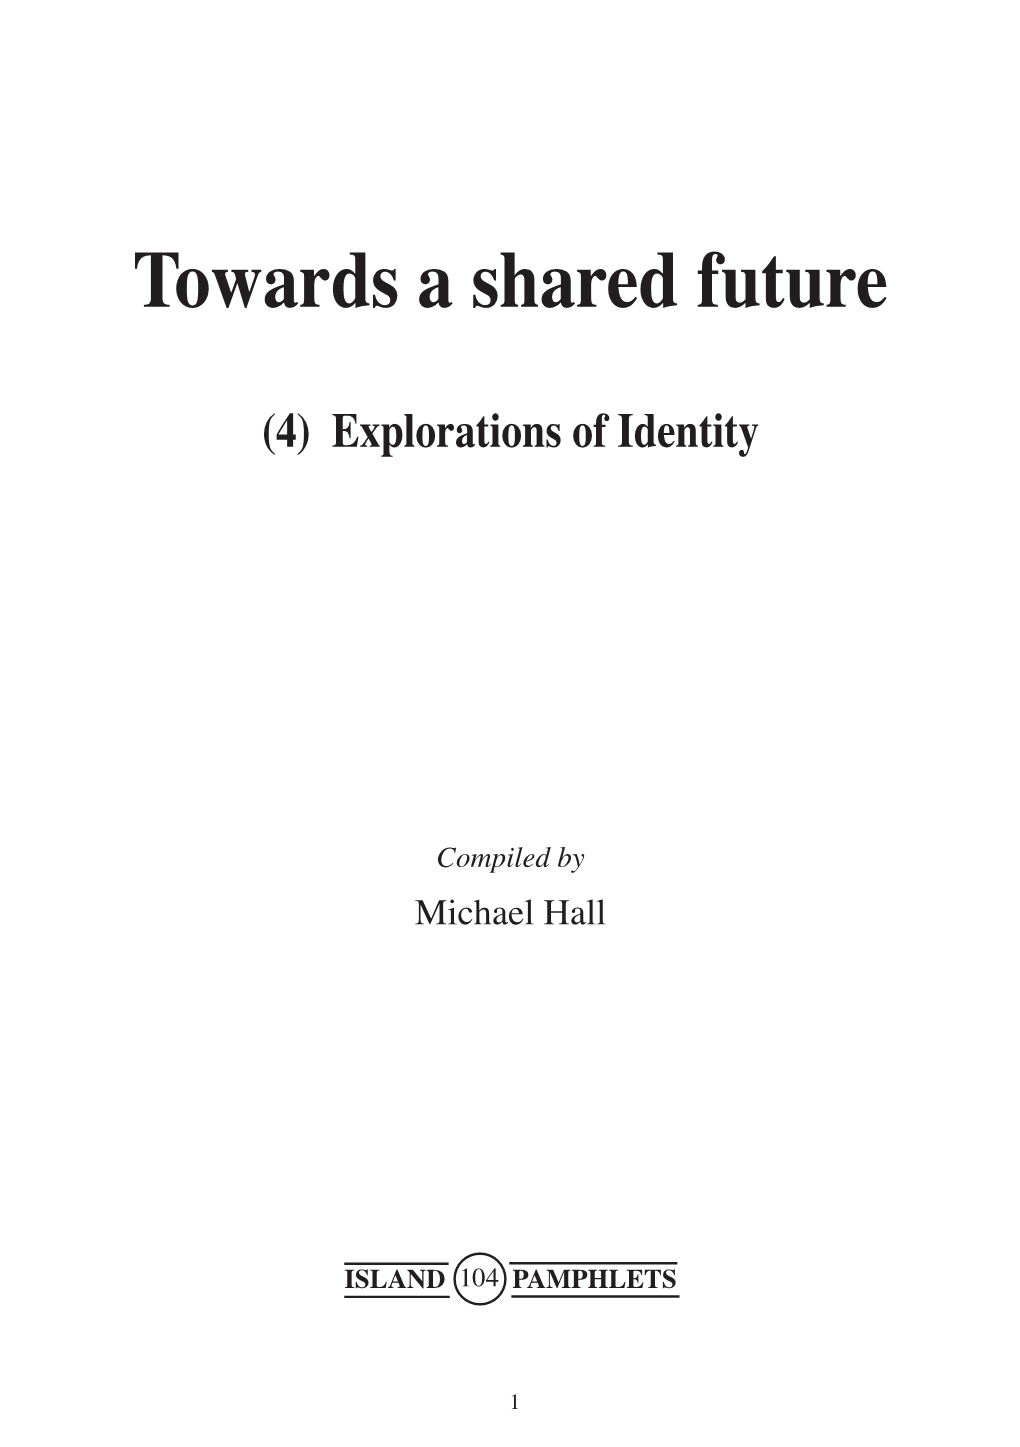 Towards a Shared Future